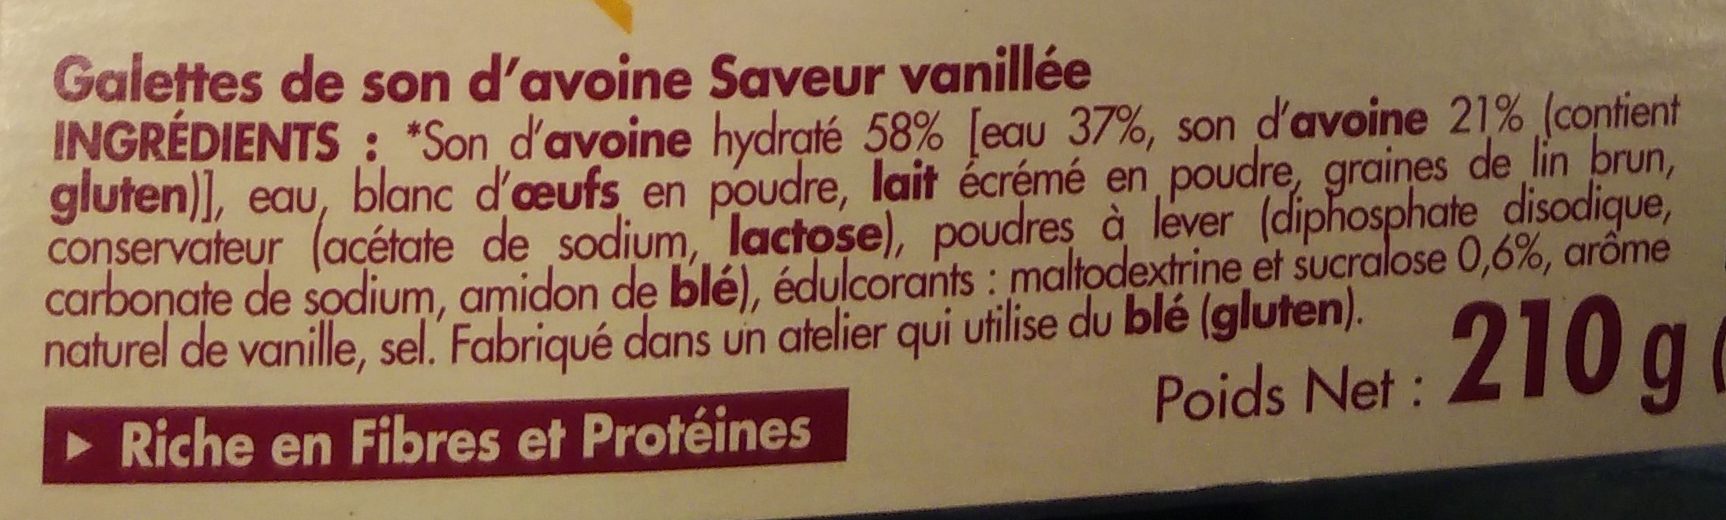 Galettes de son d'avoine saveur vanillée - Ingrédients - fr